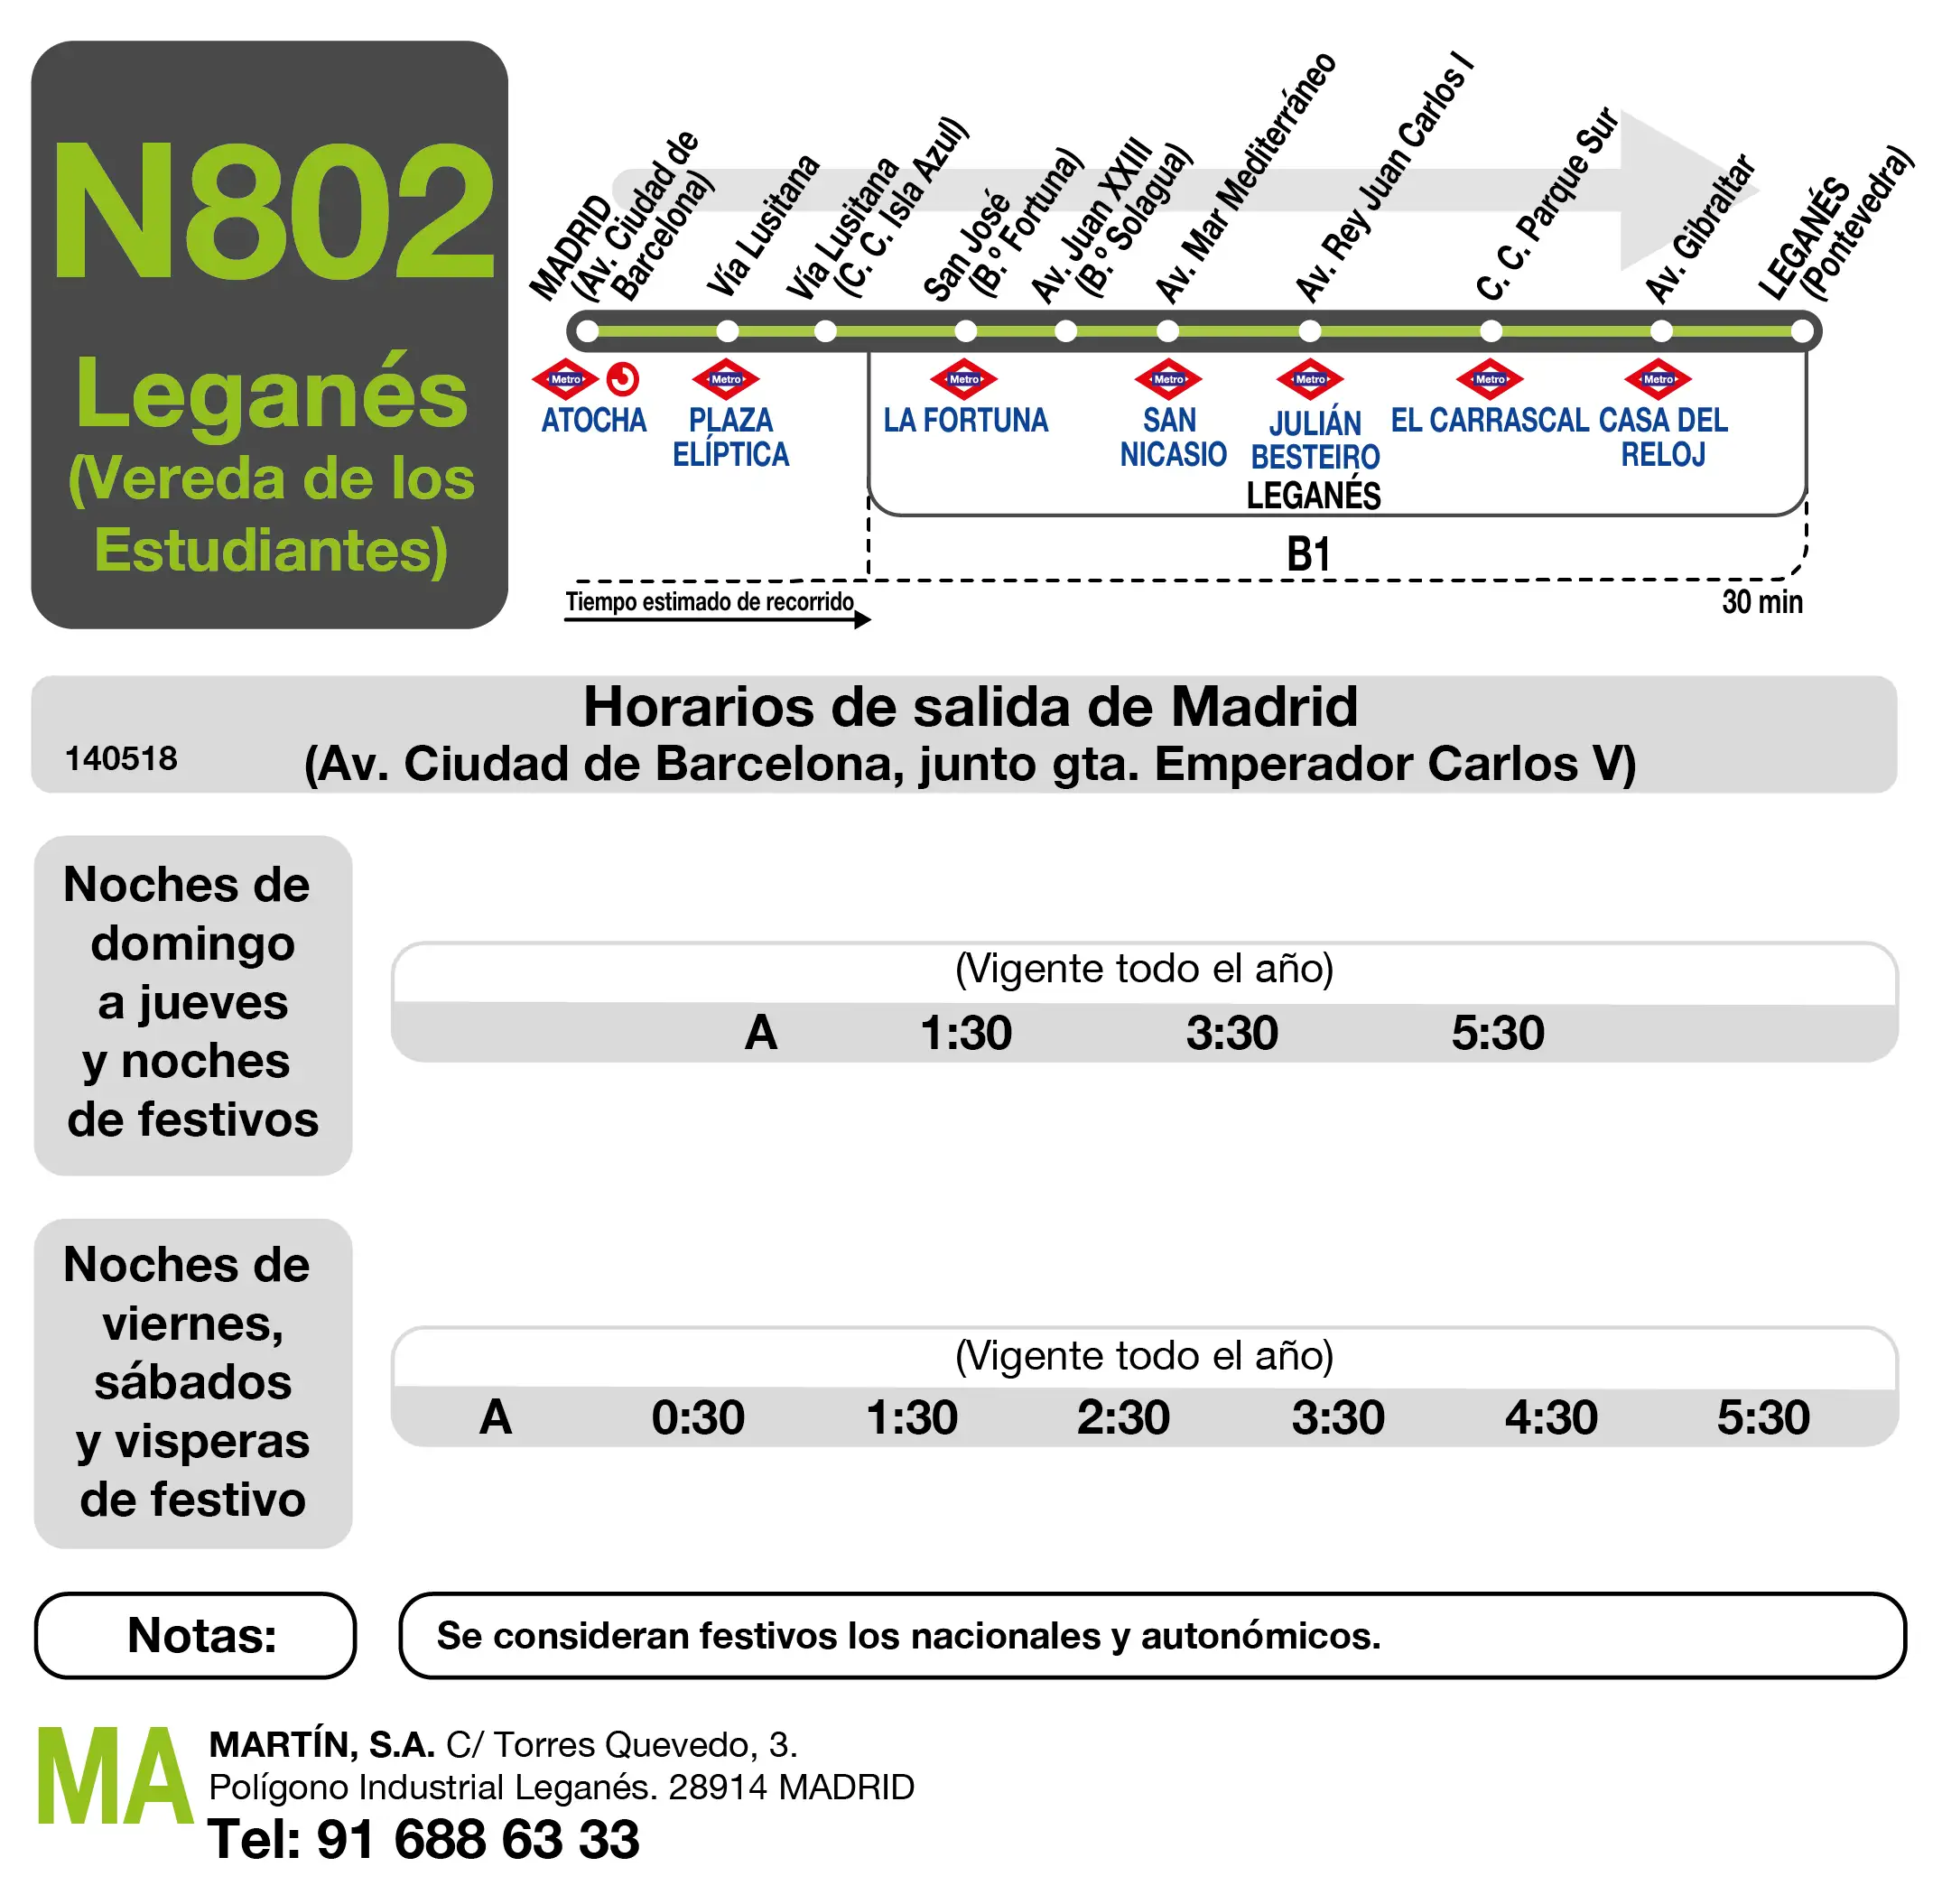 Tabla de horario para la ida de la línea N802 Madrid(Atocha) - Leganés(V. Estudiantes)